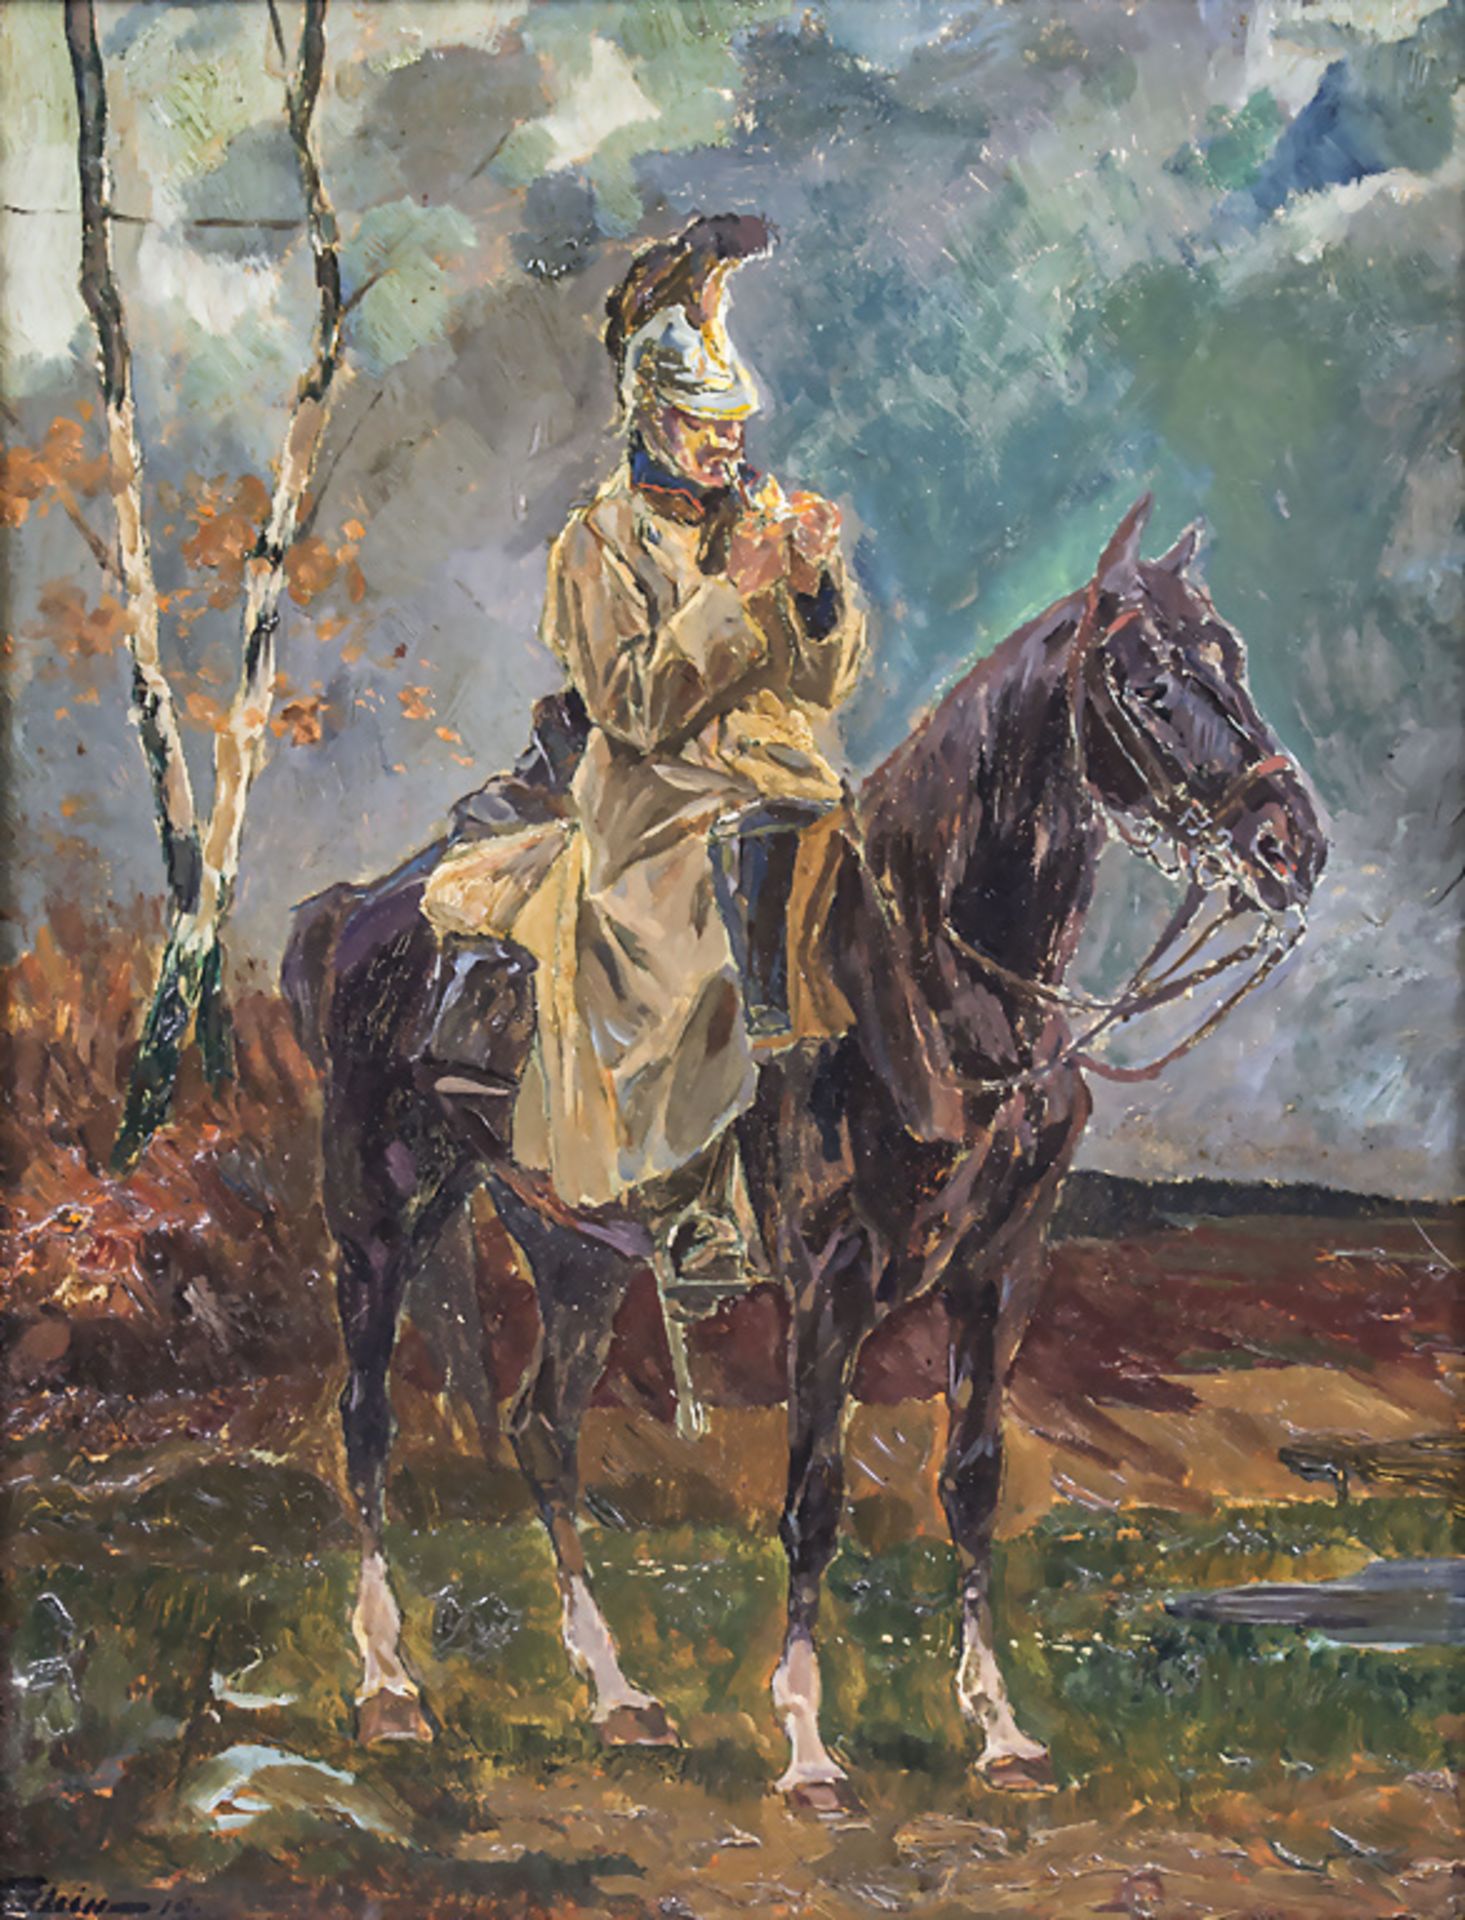 Fritz KLEIN (1882-1953), 'Hauptmann zu Pferde' / 'Captain on horse'